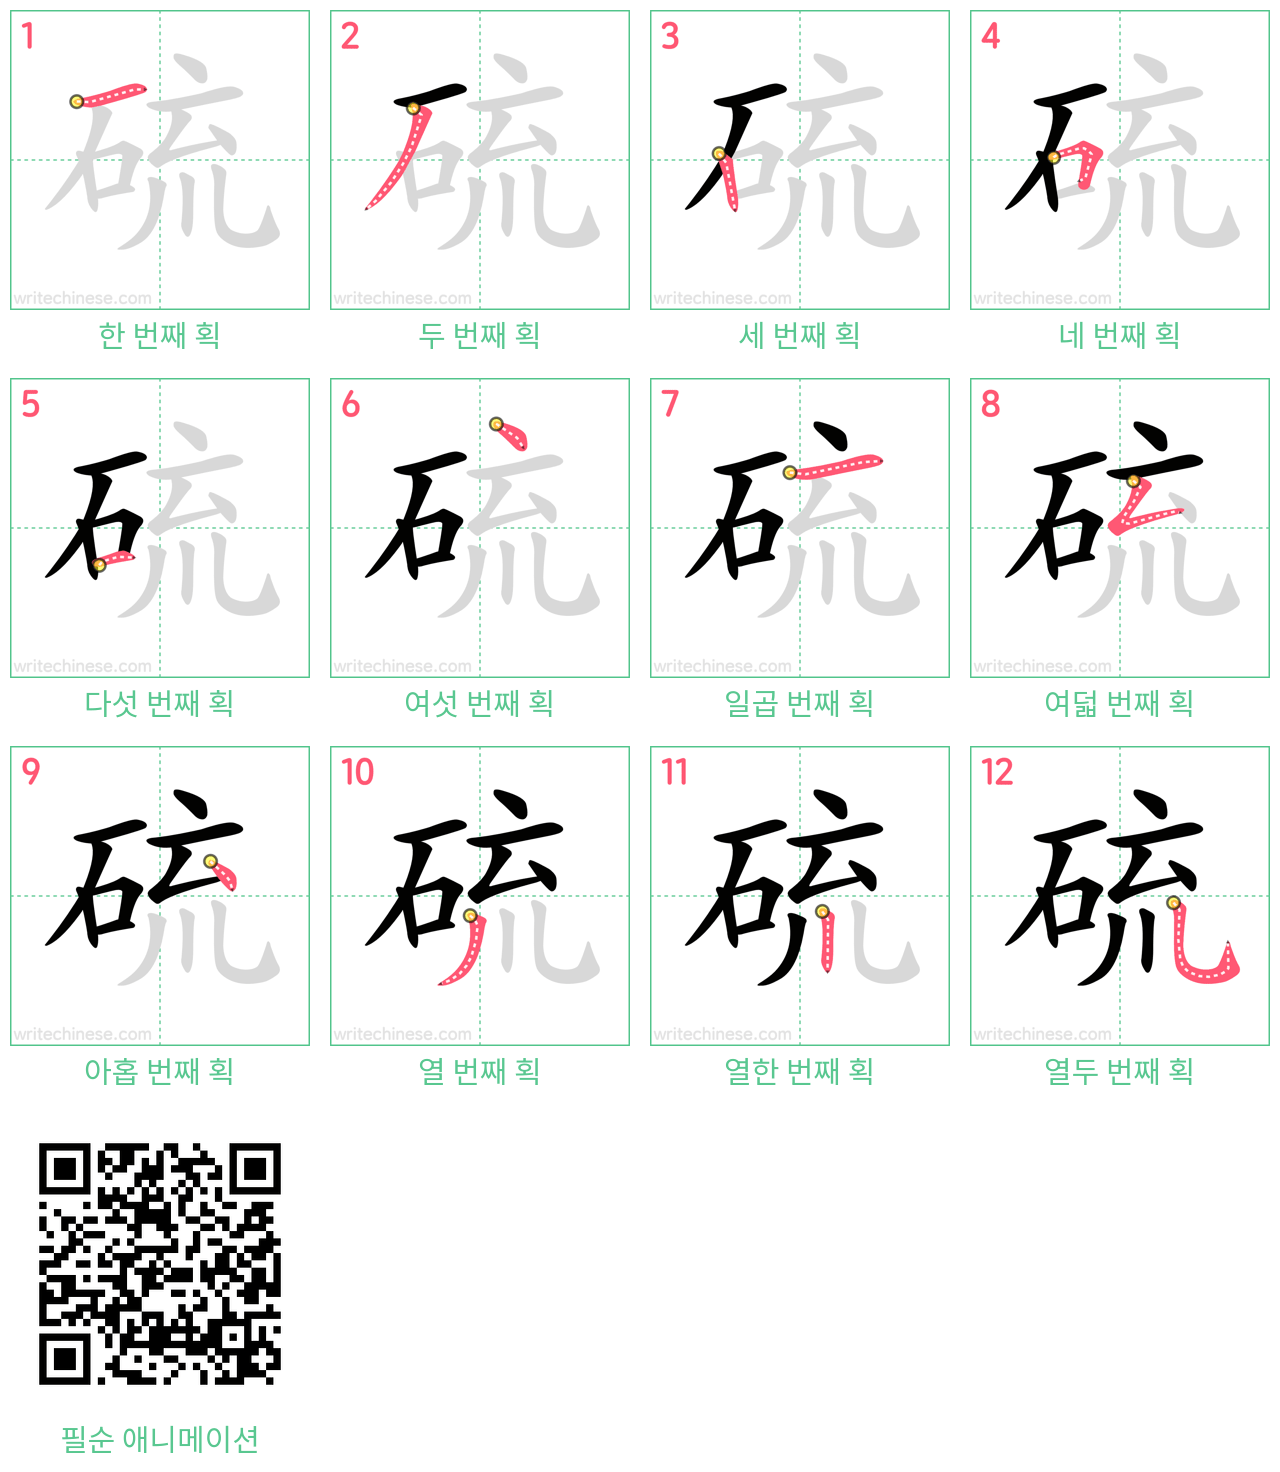 硫 step-by-step stroke order diagrams